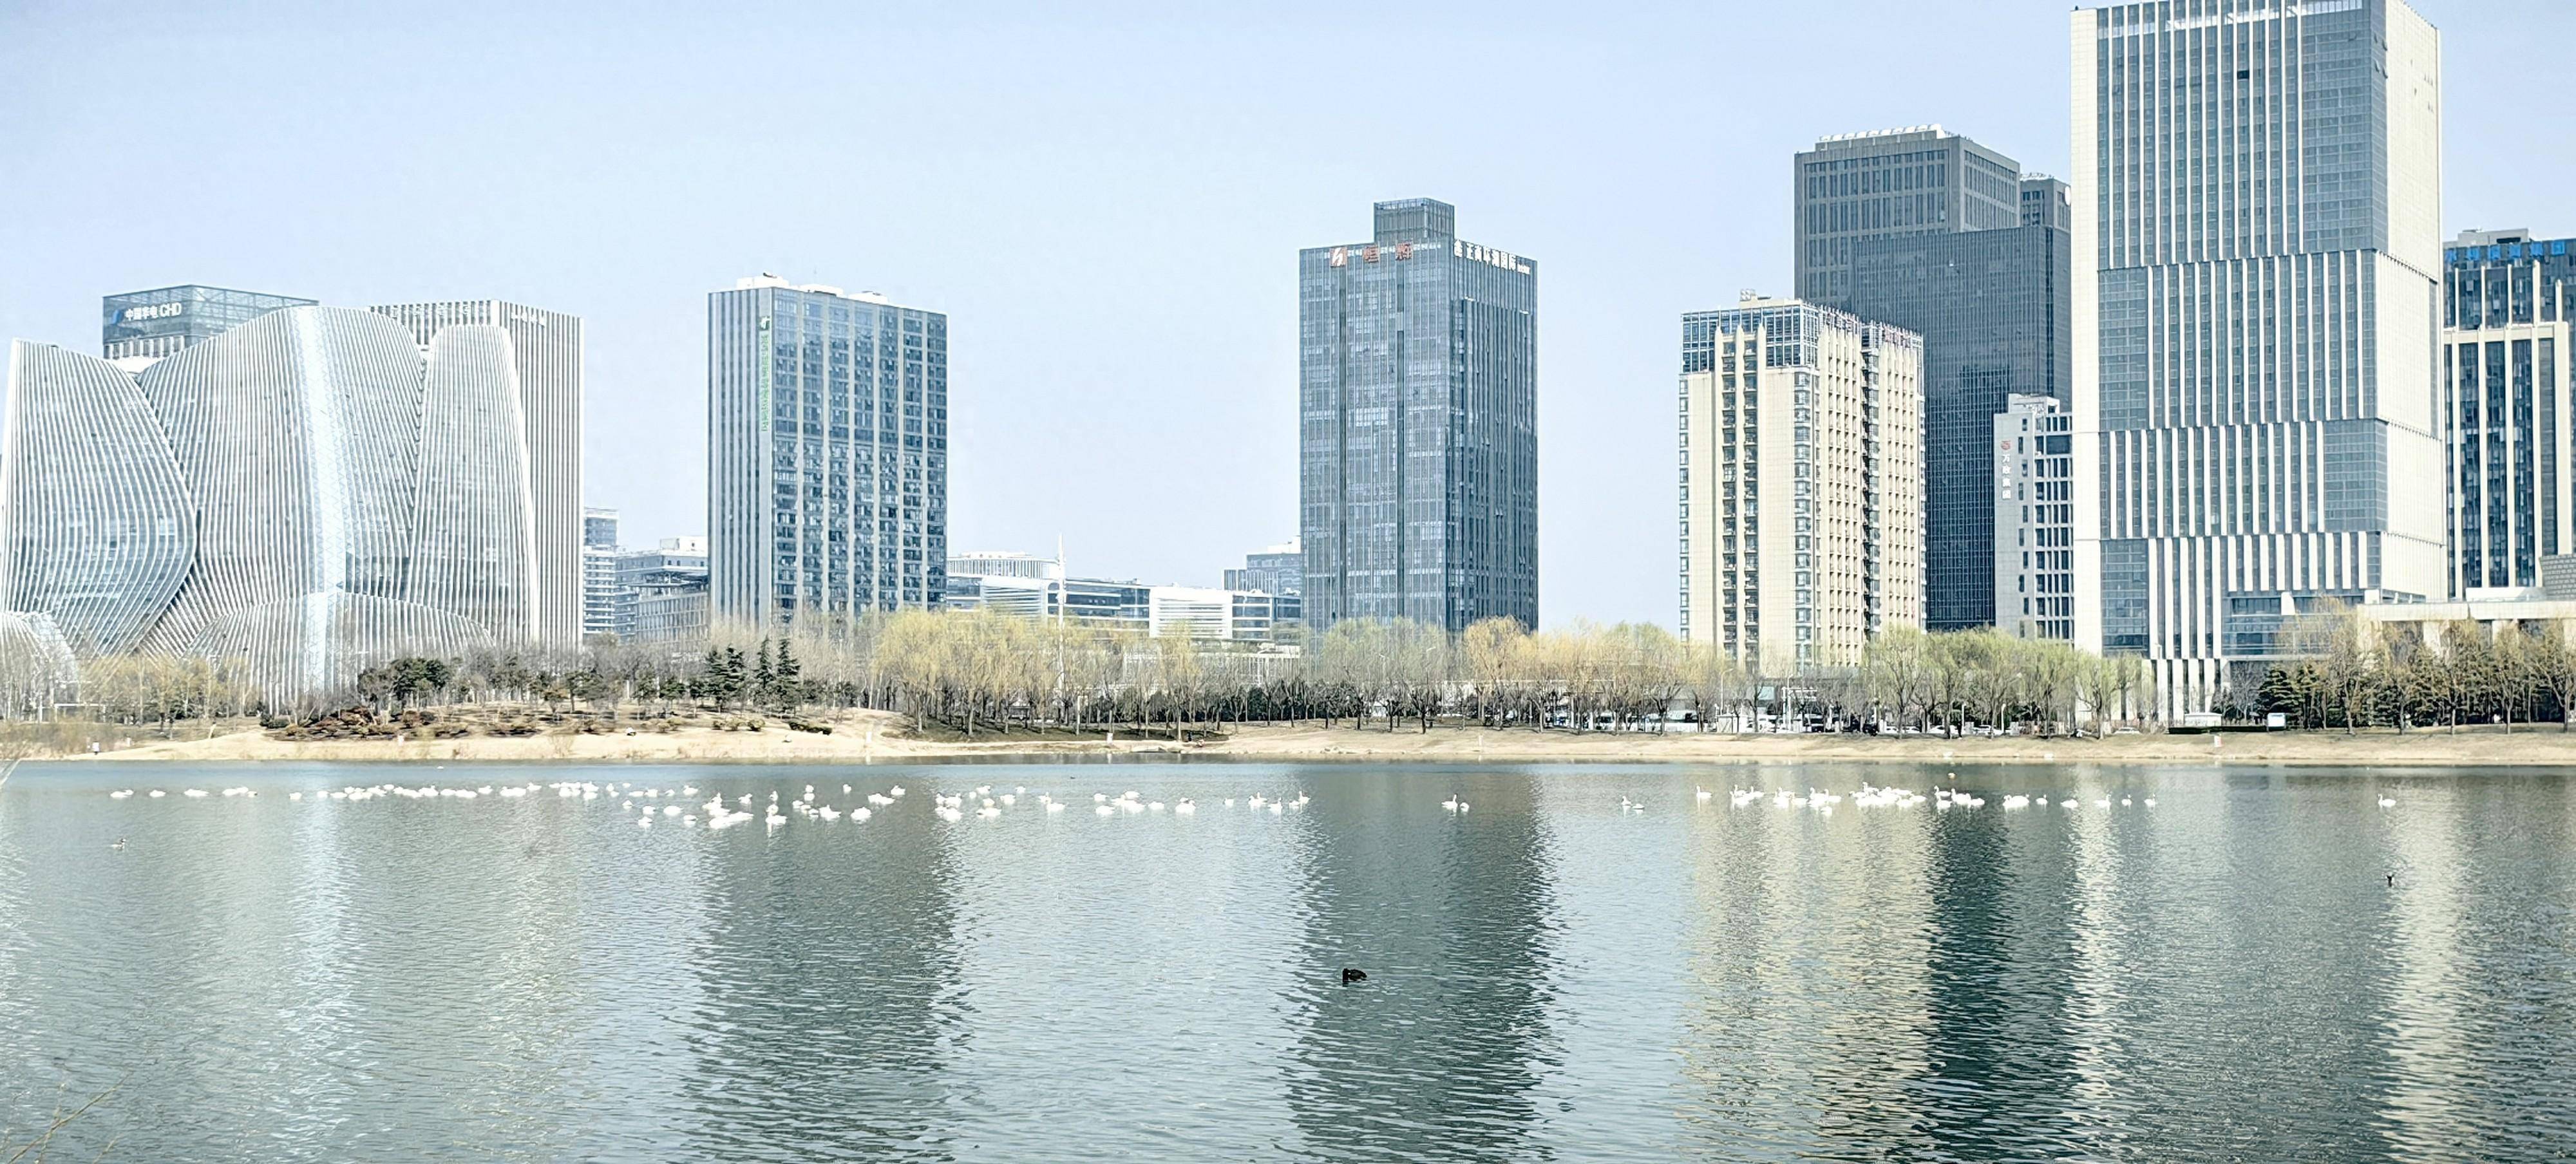 惊喜!上百只天鹅做客郑州龙子湖